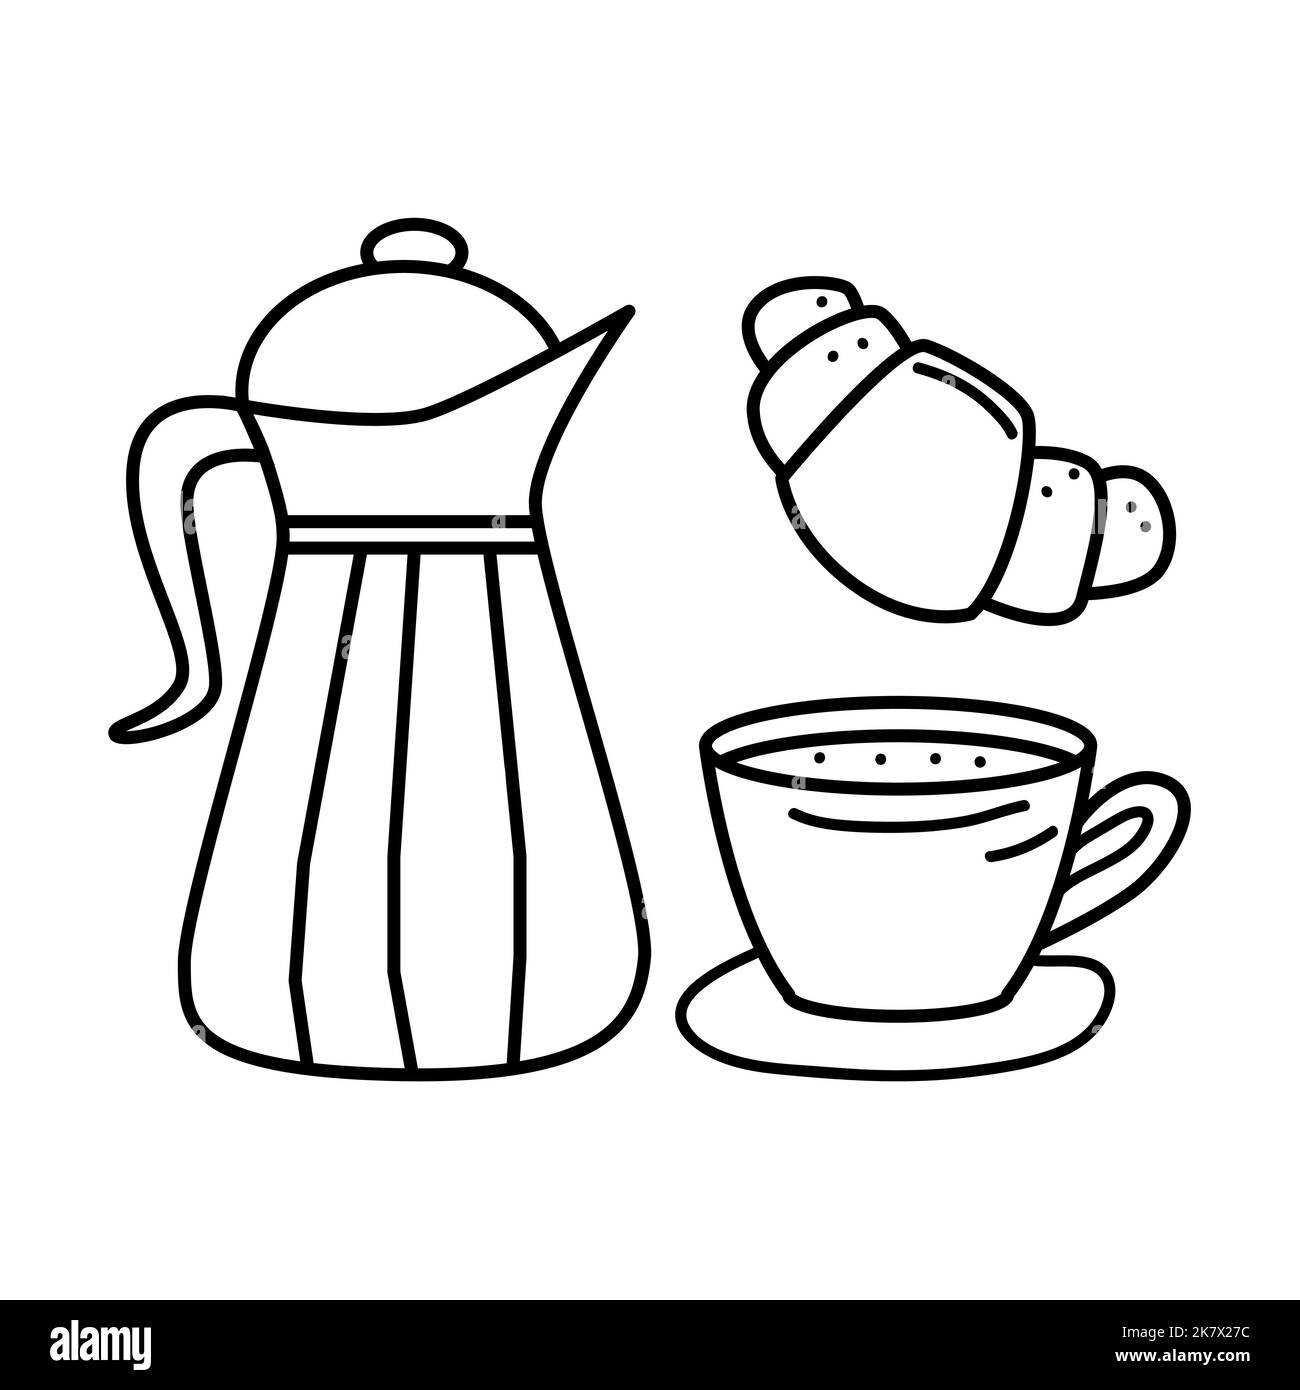 Teetasse mit Teekannen und Croissant in handgezeichneter Doodle-Art. Konzept für die Teezeit. Vektorgrafik. Stock Vektor